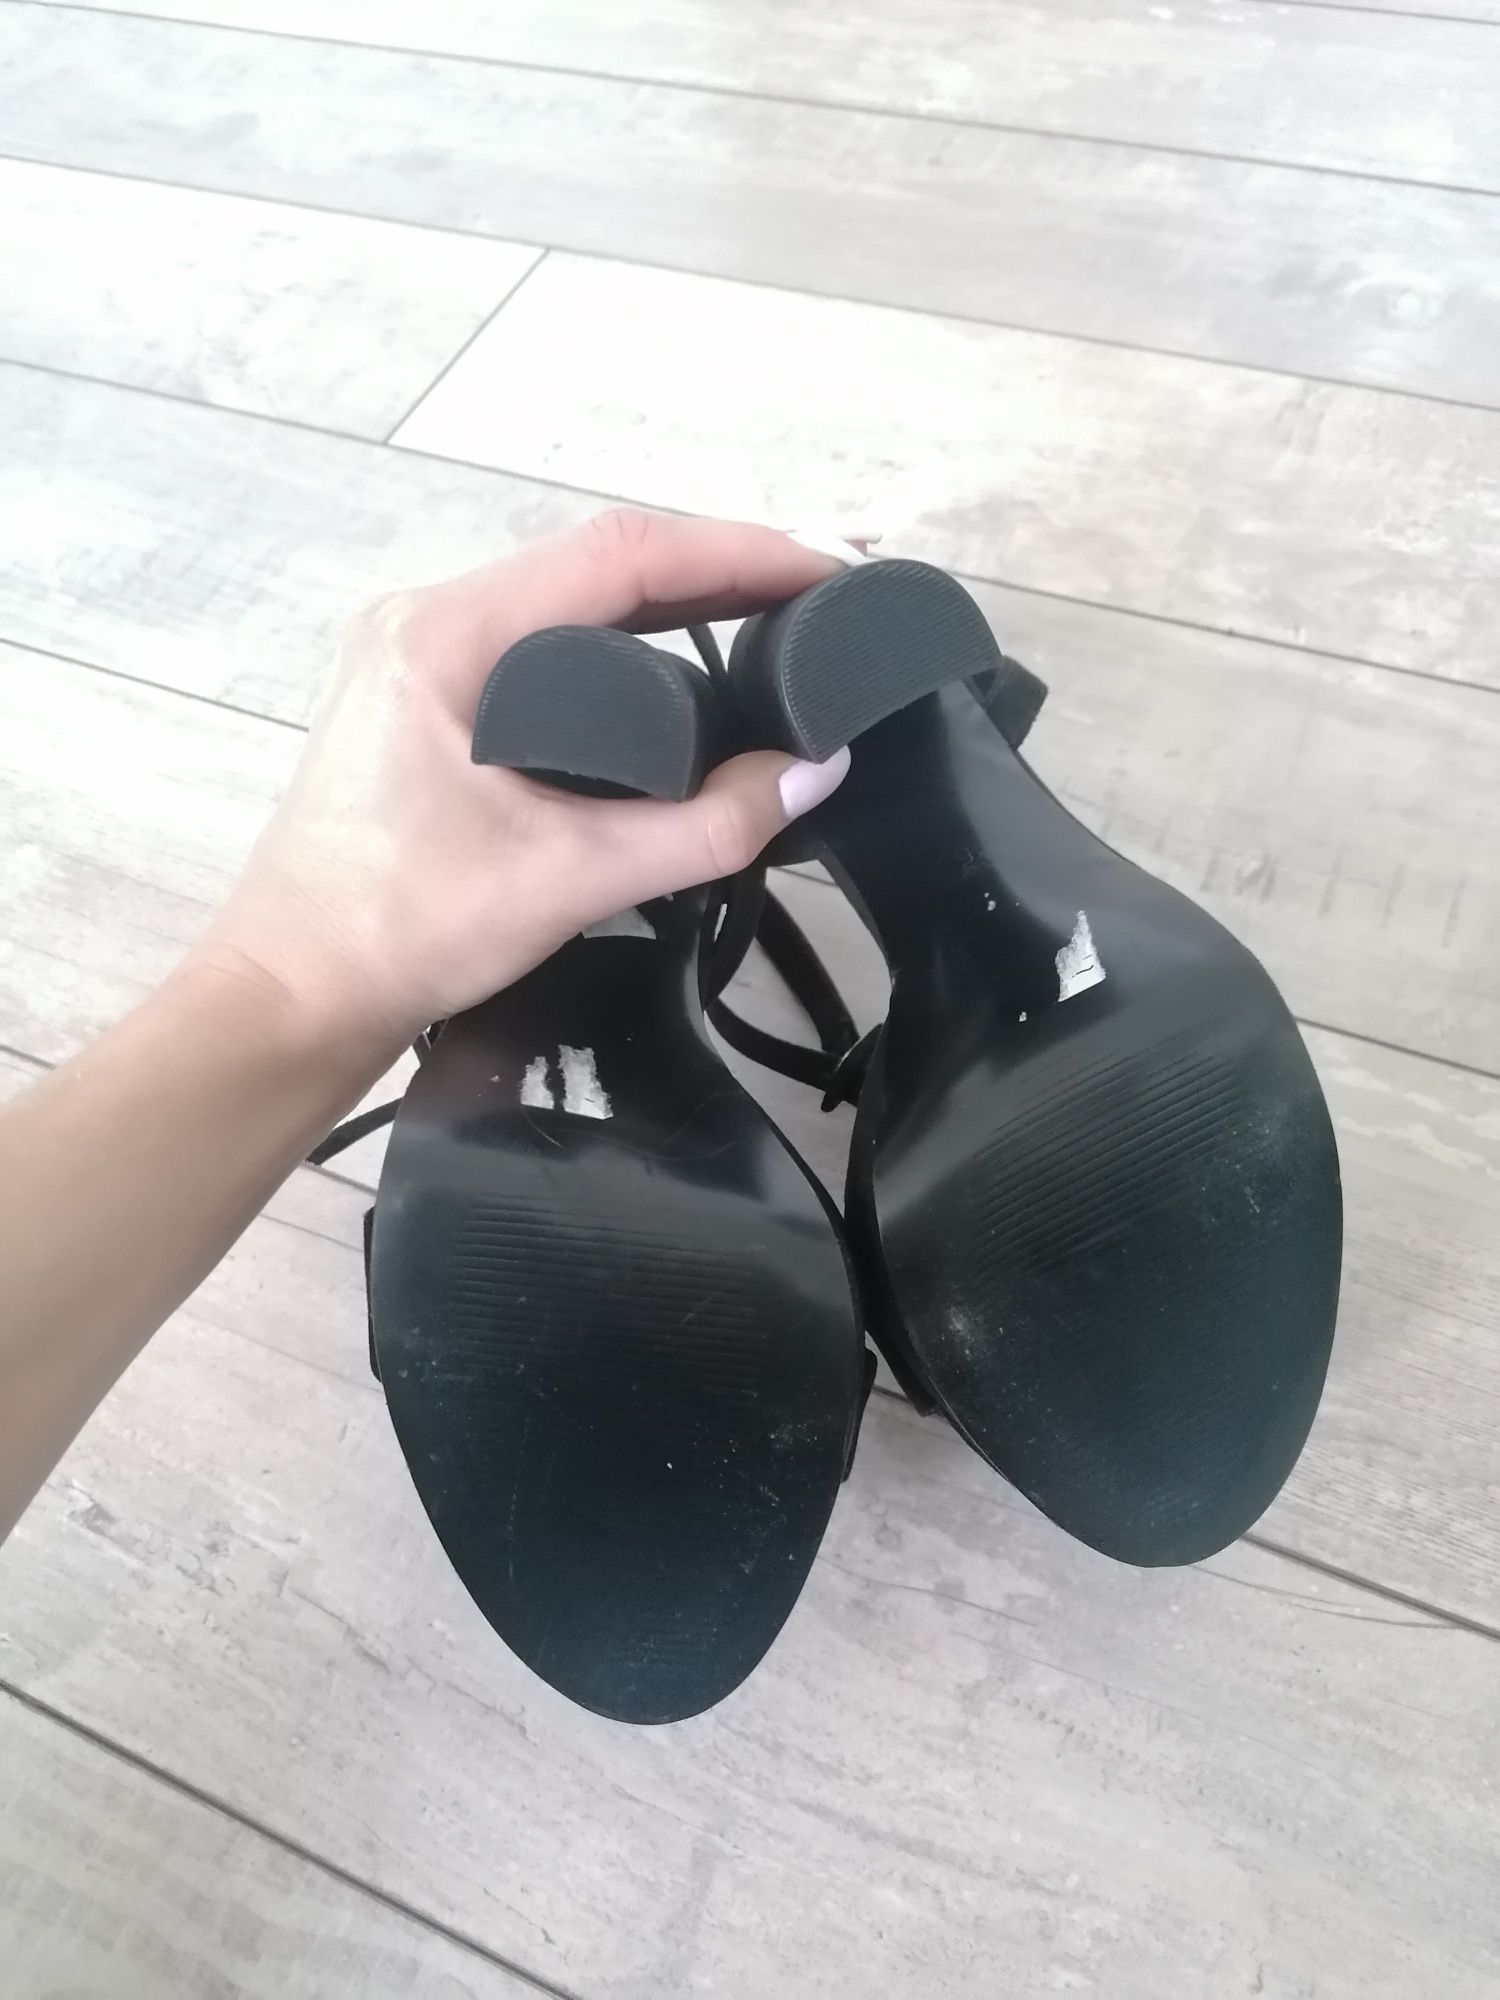 Buty damskie Asos, sandały czarne zamszowe rozmiar 5 (38), nowe